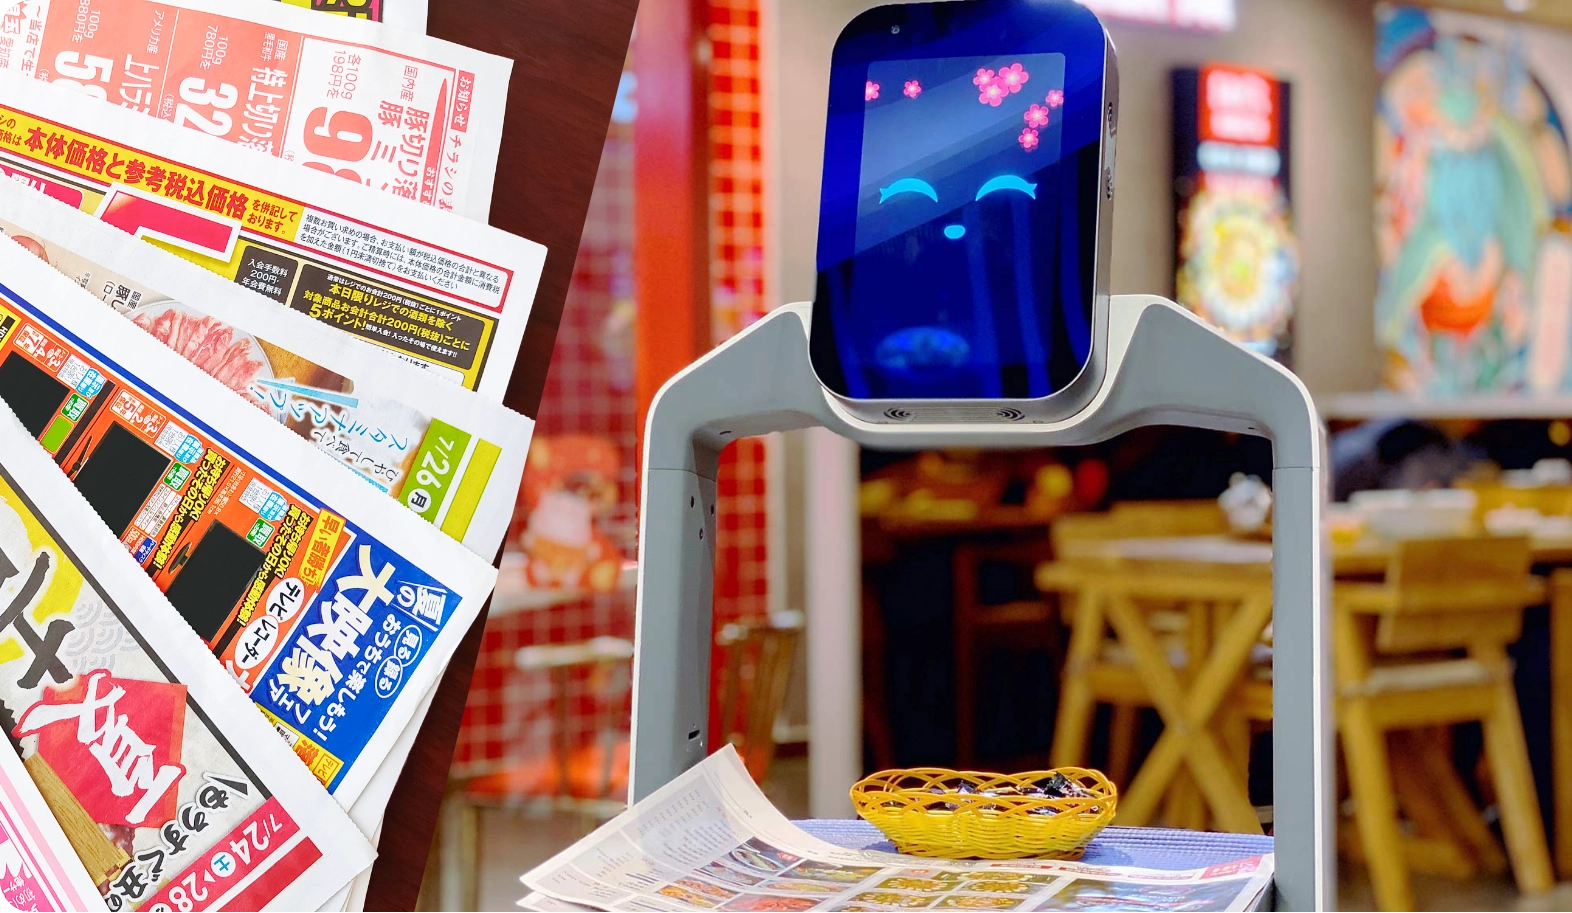 宣伝モードを使って、試食やチラシを配布するロボット